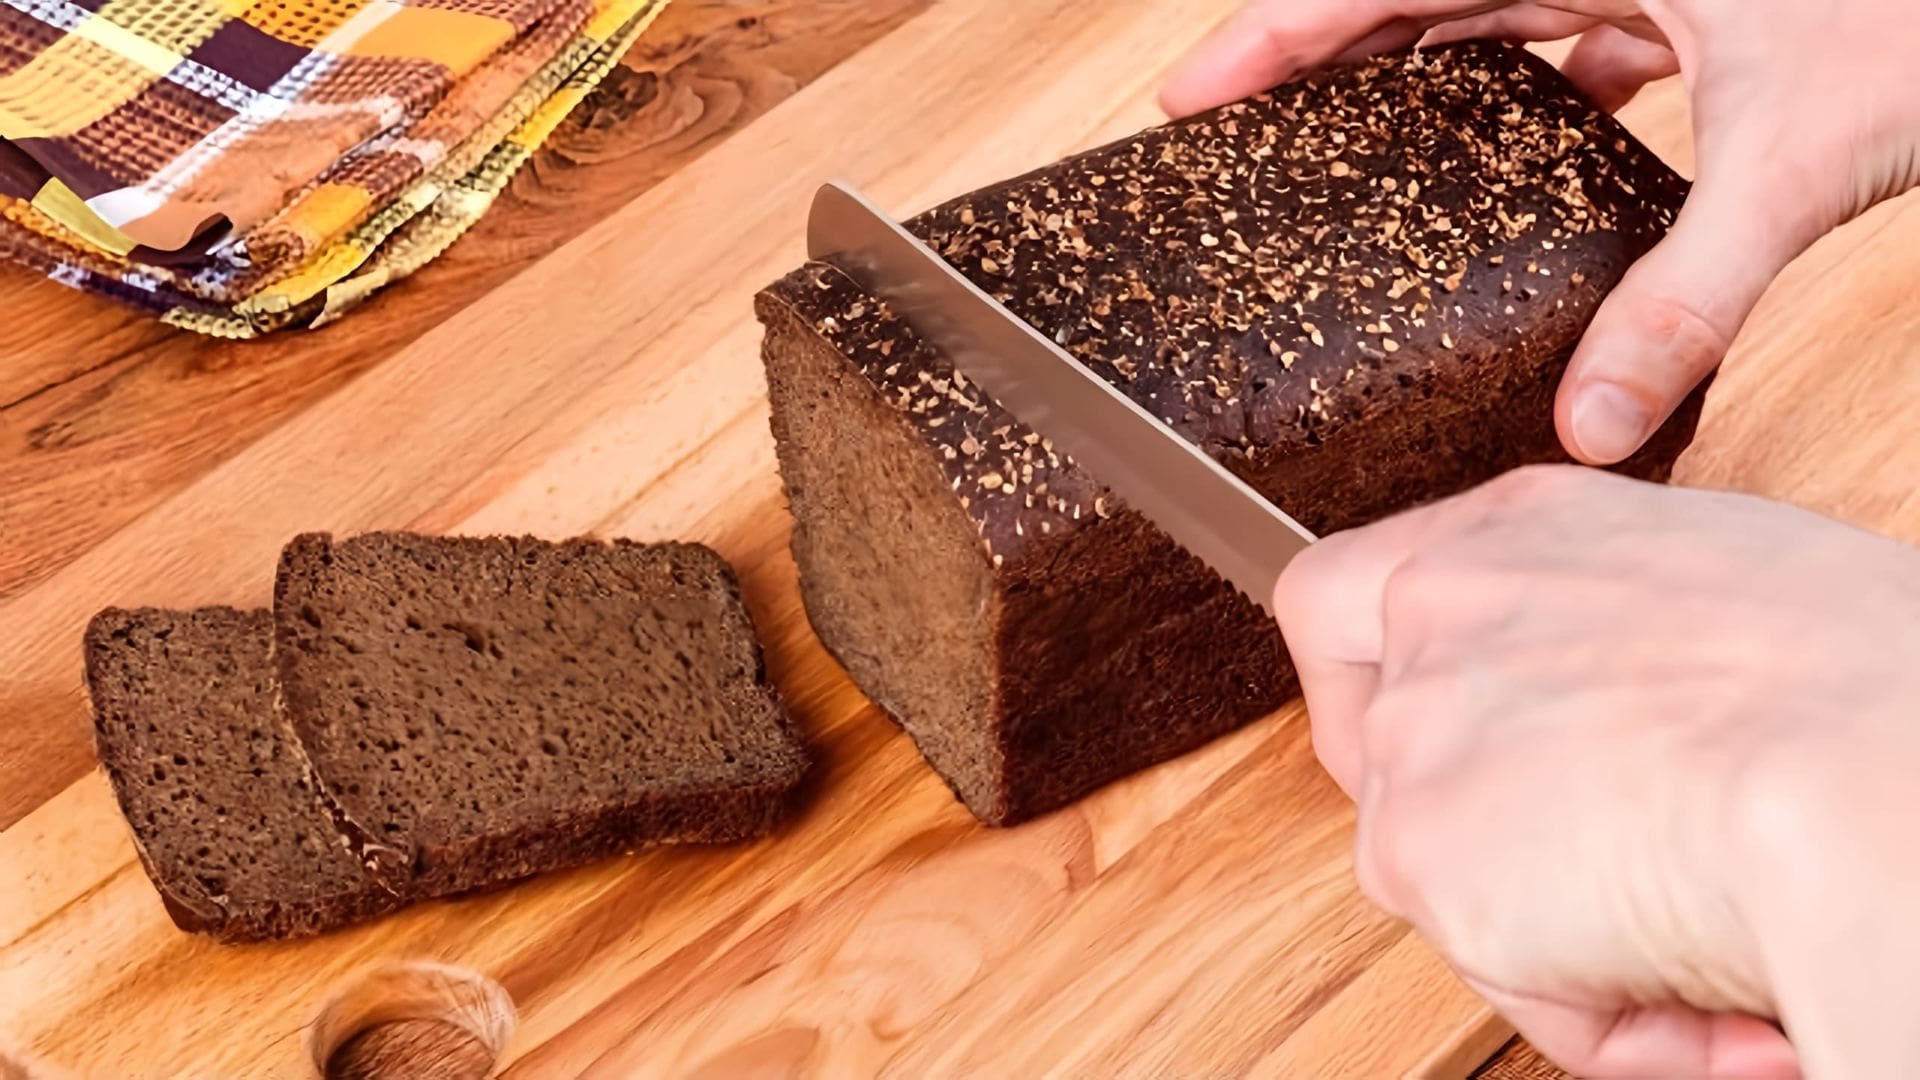 В этом видео демонстрируется рецепт приготовления кваса из хлеба и воды